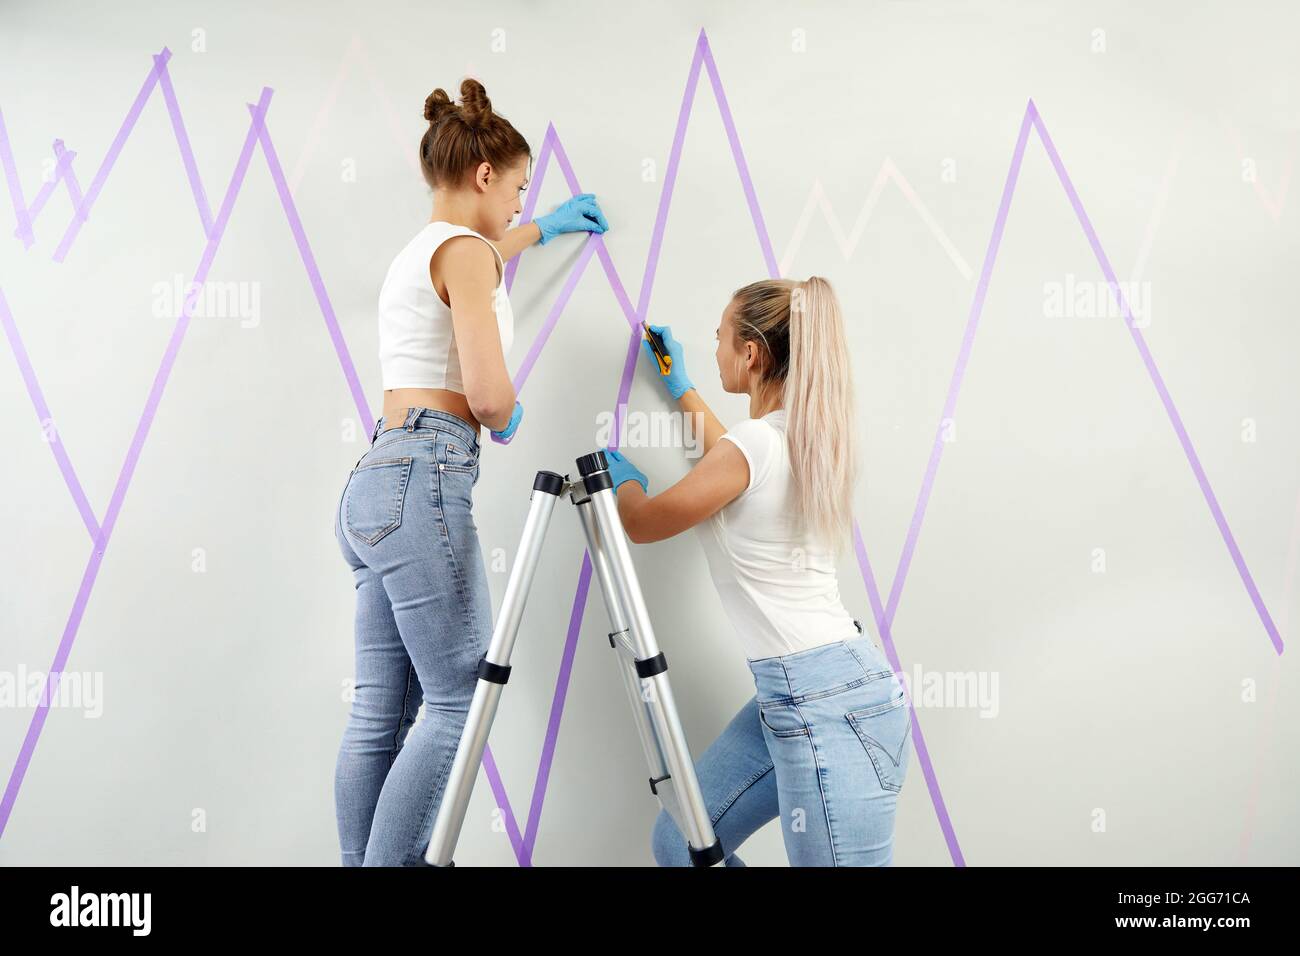 Zwei junge Frauen, die die Wand für das Malen vorbereiten, stehen auf einer  Leiter und tragen Klebeband an der Wand auf. DIY-Projekt Stockfotografie -  Alamy